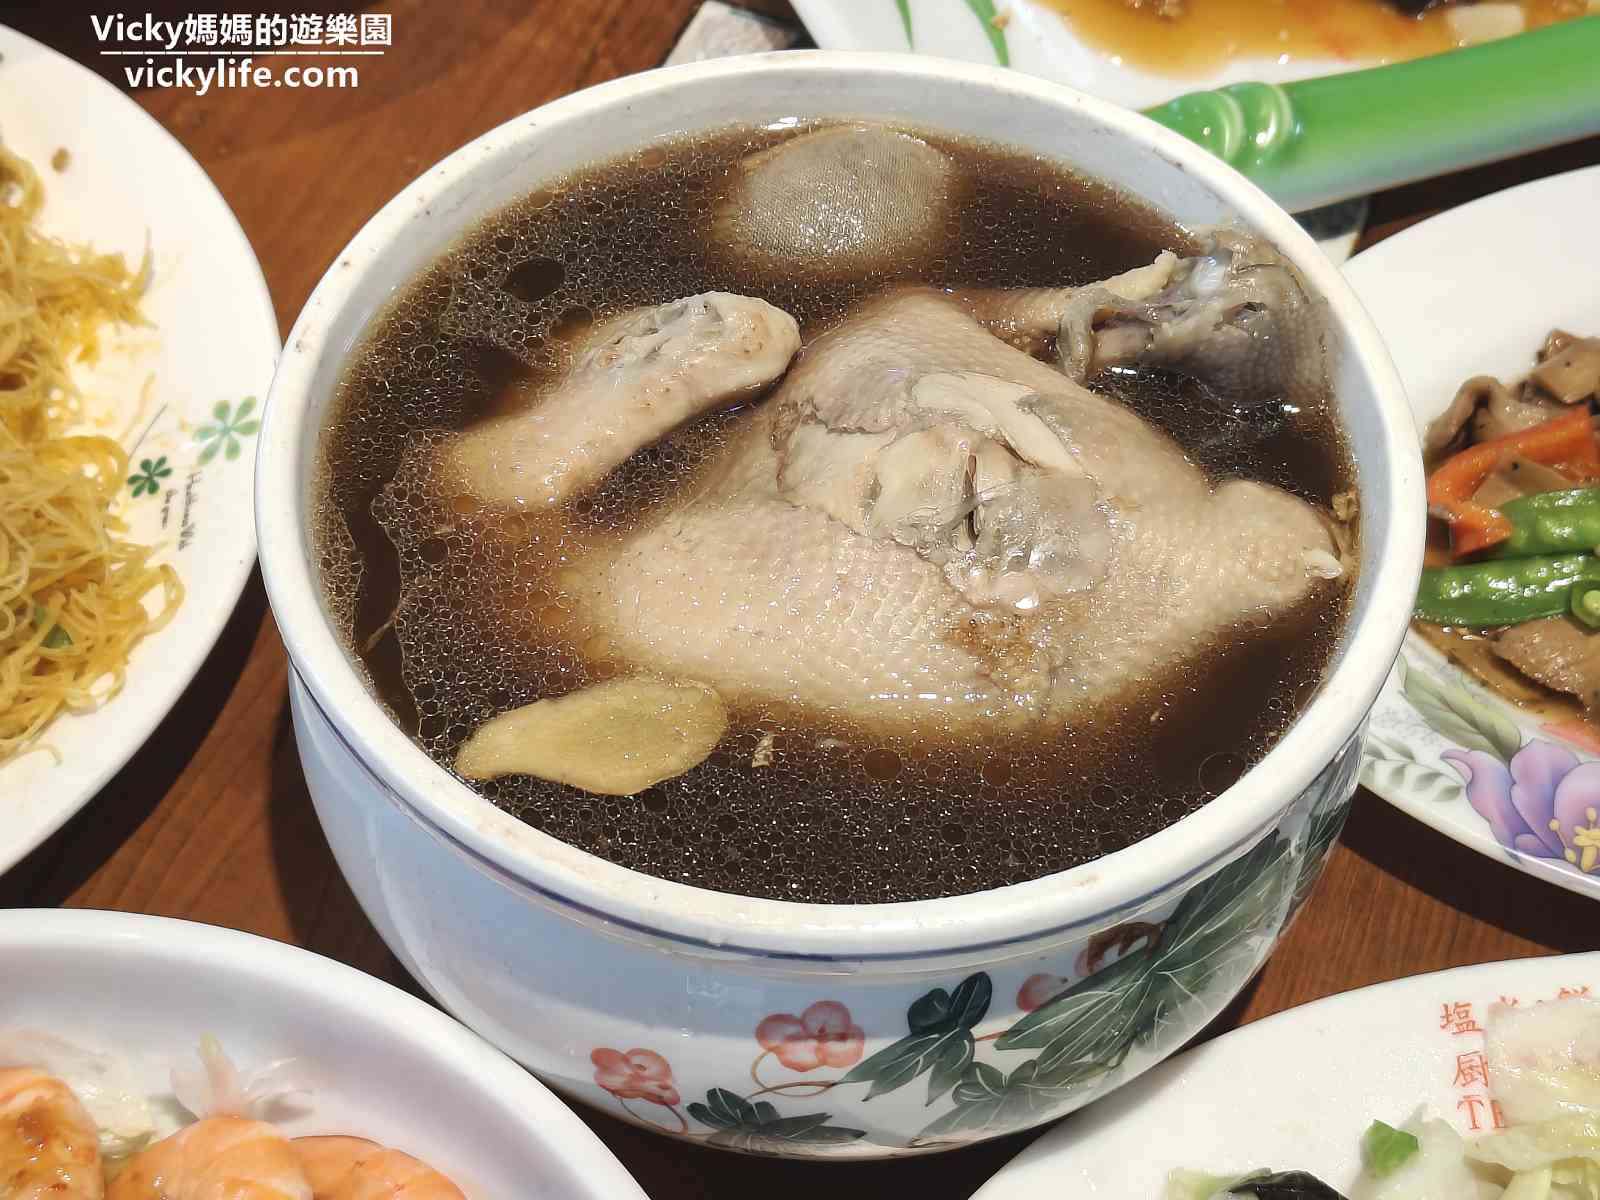 台南鹽水景點 美食︱台灣詩路 風味餐廳：賞木棉花後來這詩情畫意的文學步道喝咖啡和用餐吧